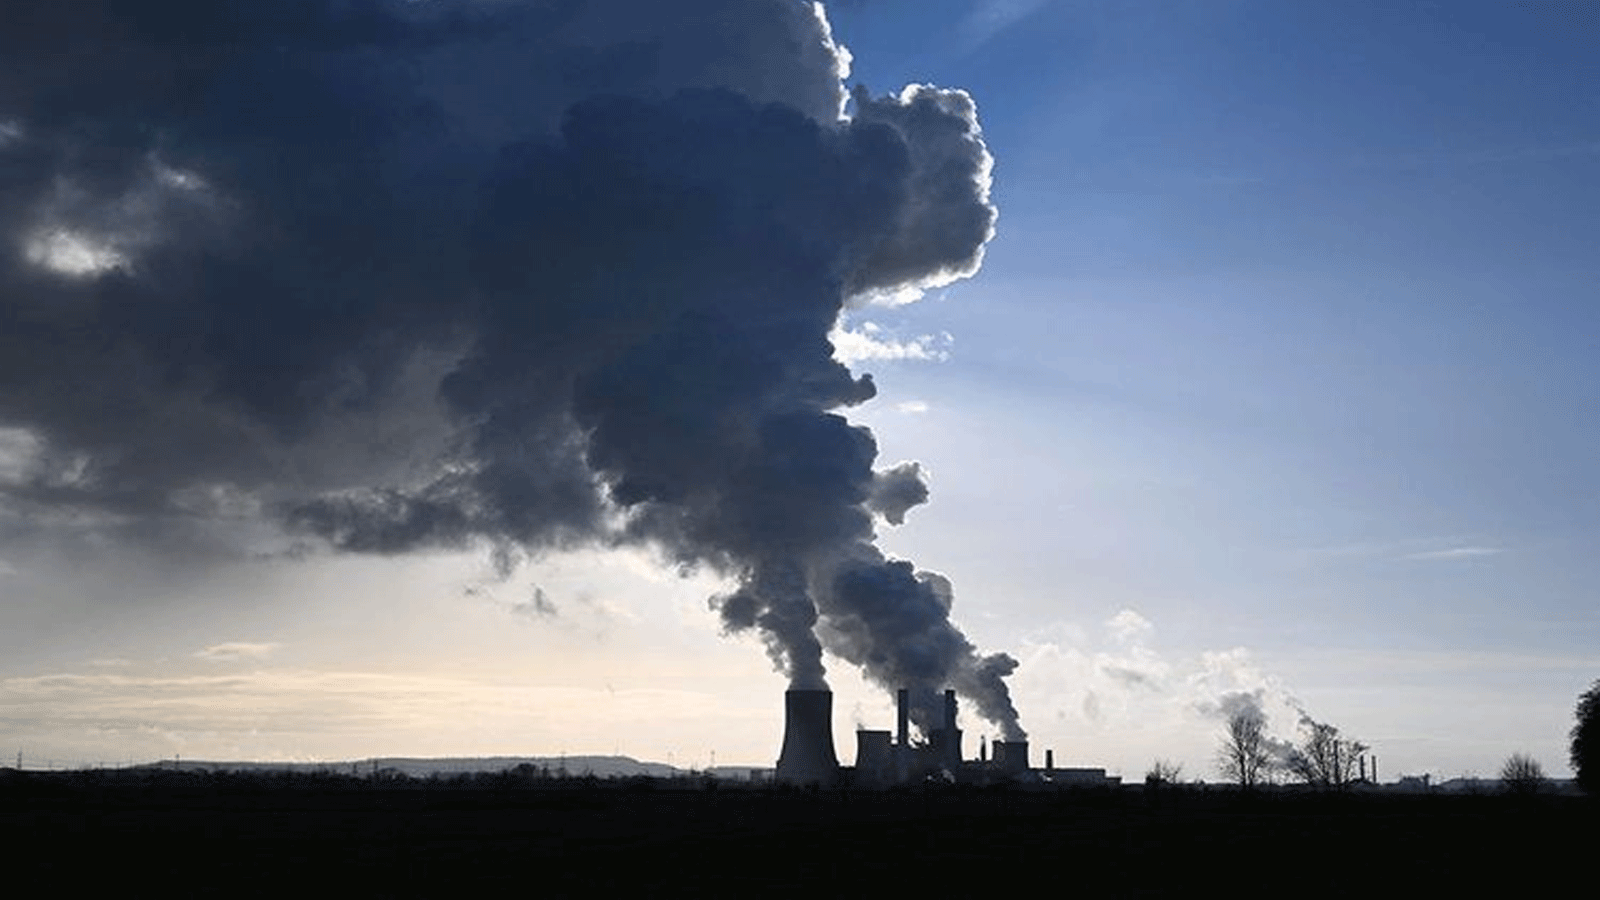 سحب ضخمة من البخار تخرج من مداخن محطة توليد الكهرباء التي تعمل بالفحم في نيديراوسيم، غربي ألمانيا